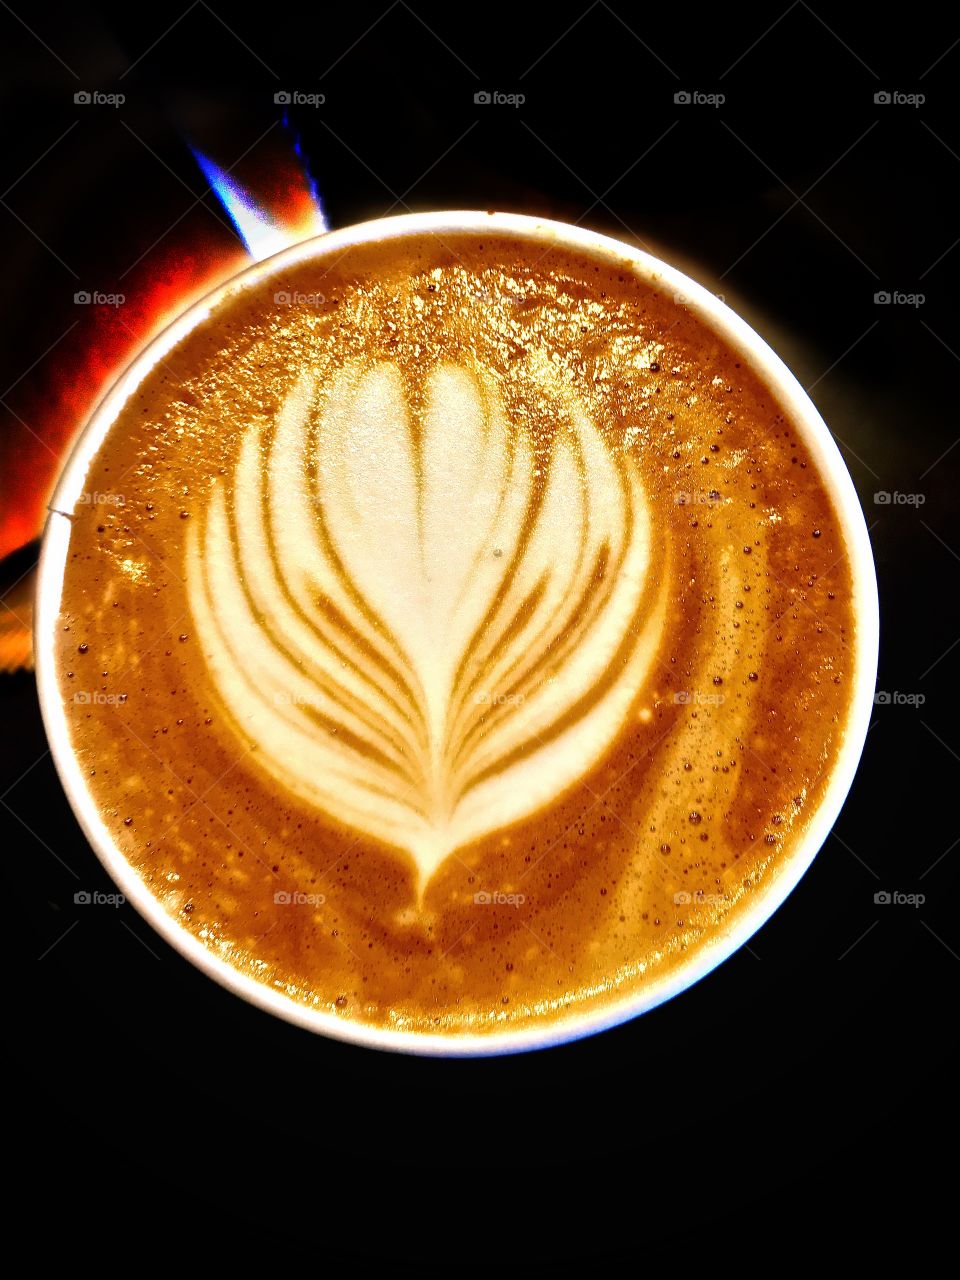 Coffee design, Moka, latte in dark background